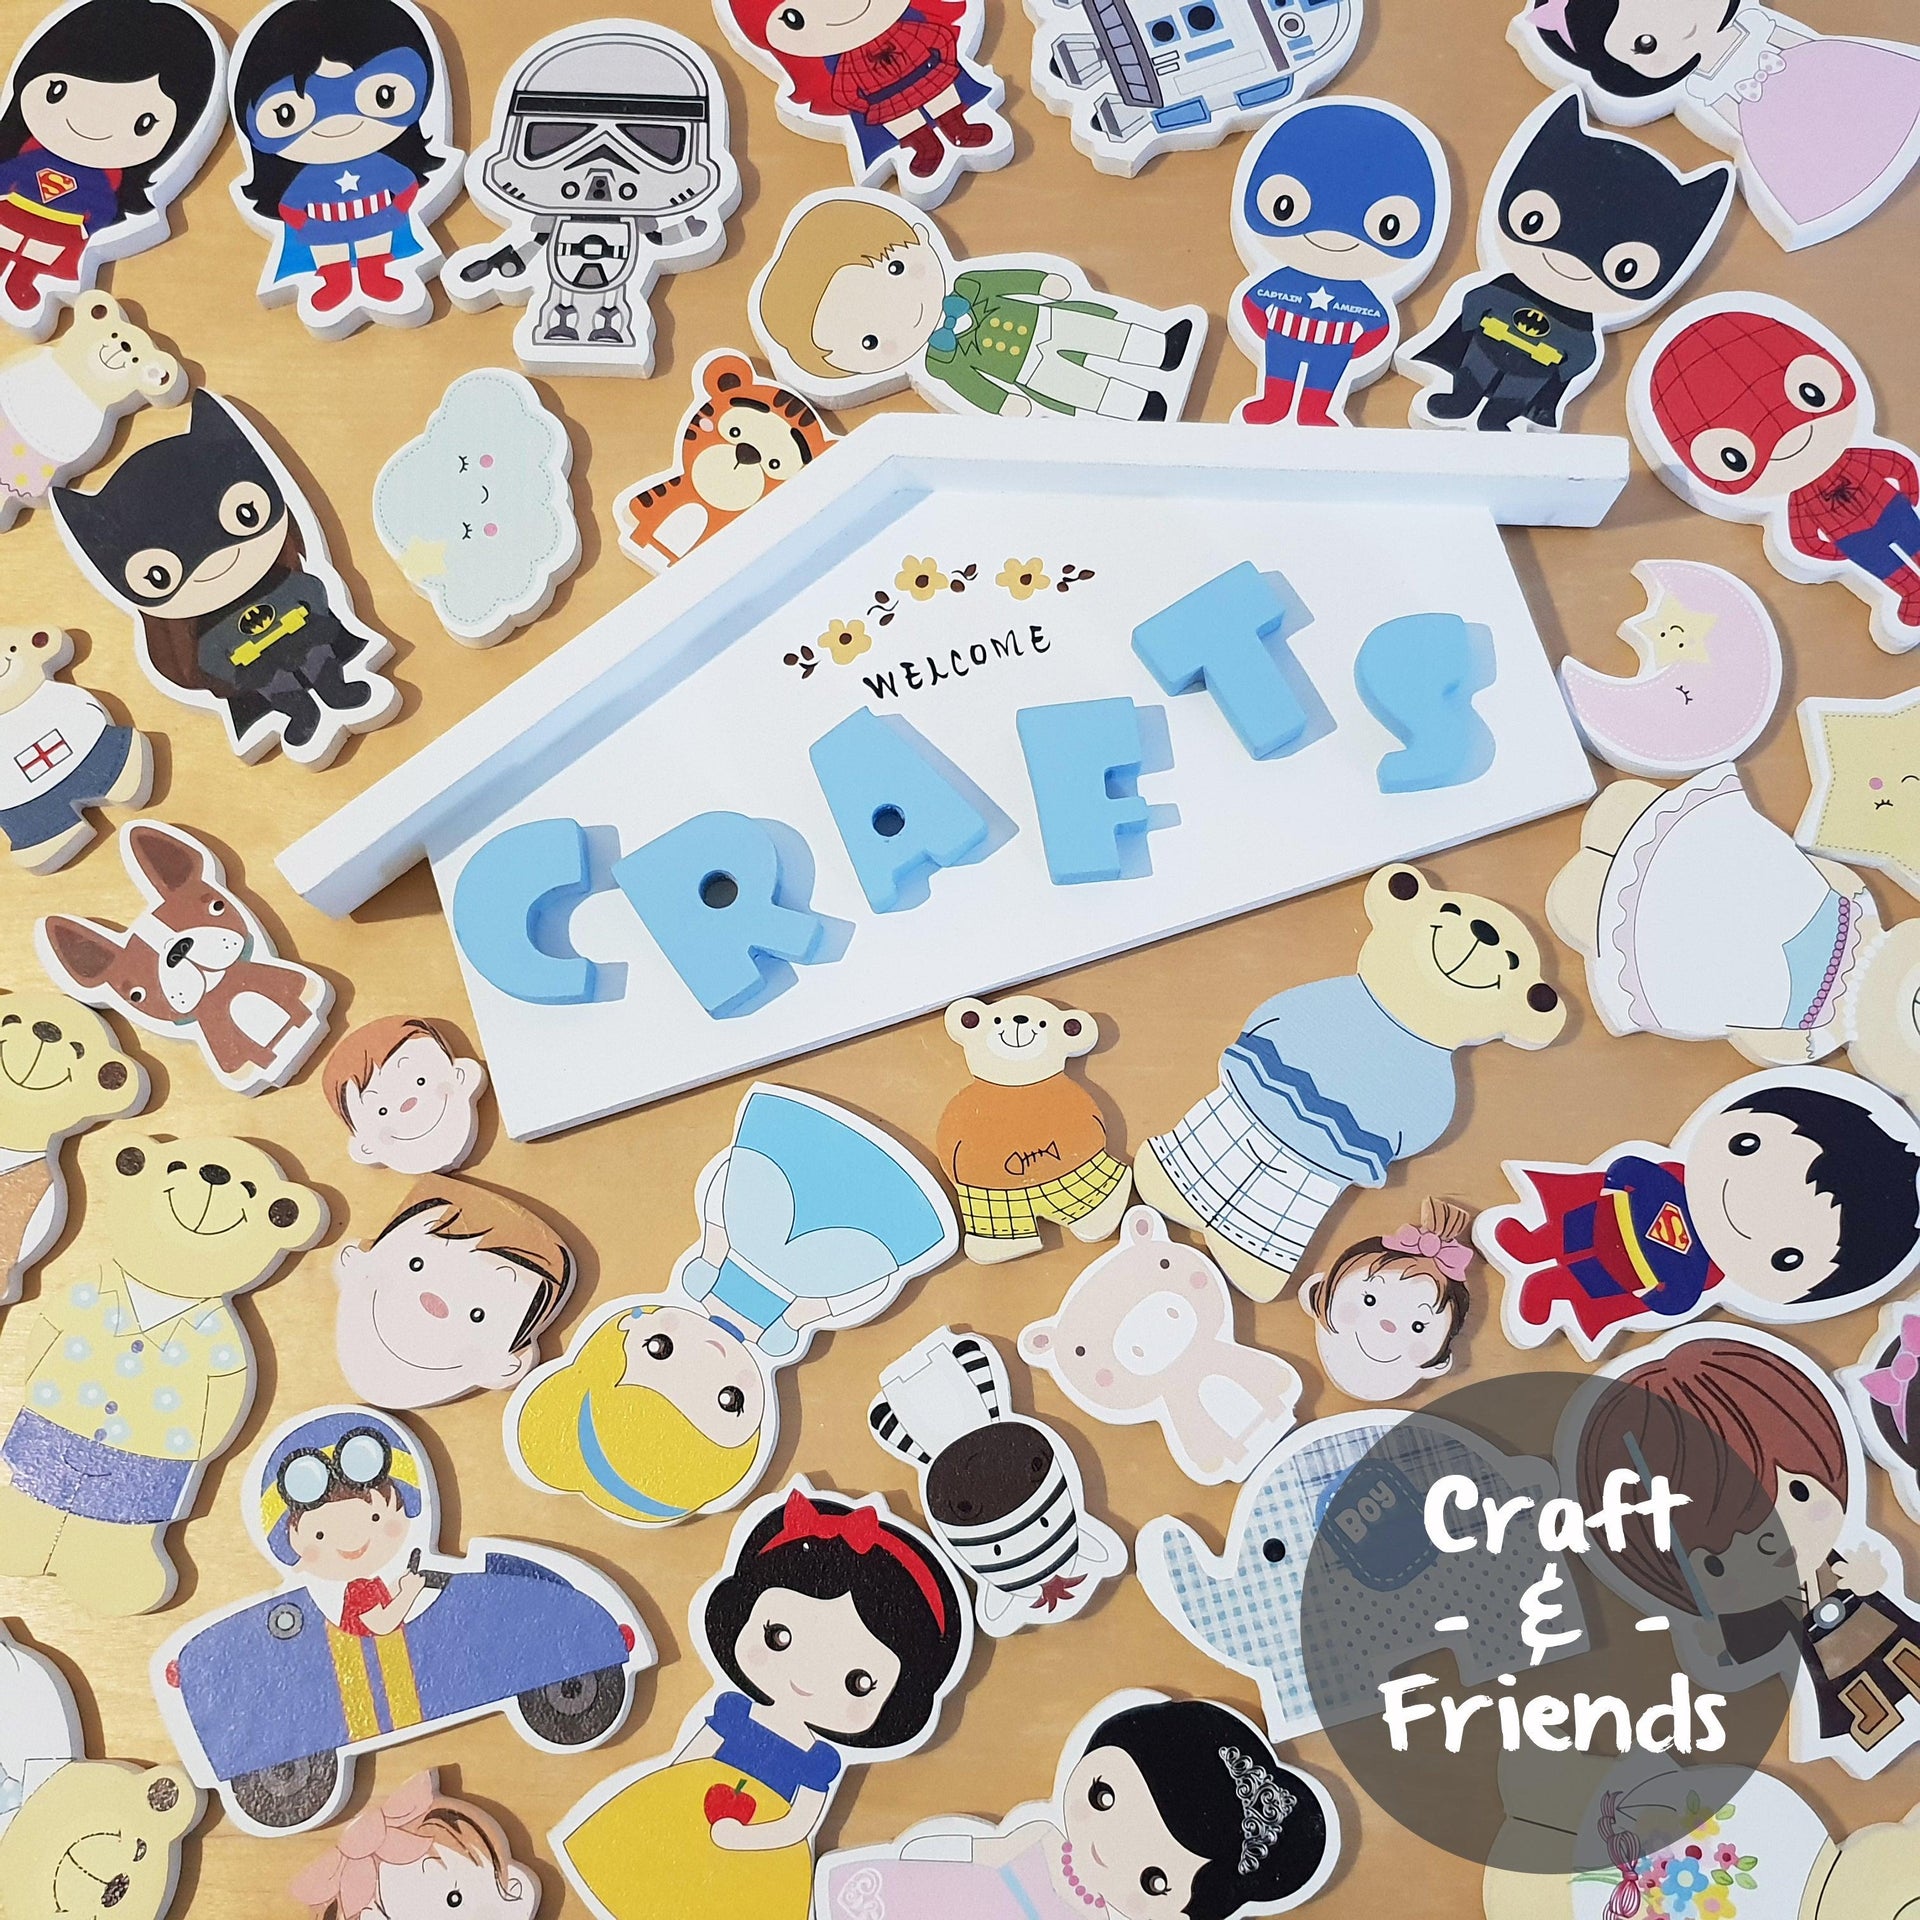 Craft & Friends - Kids Haven